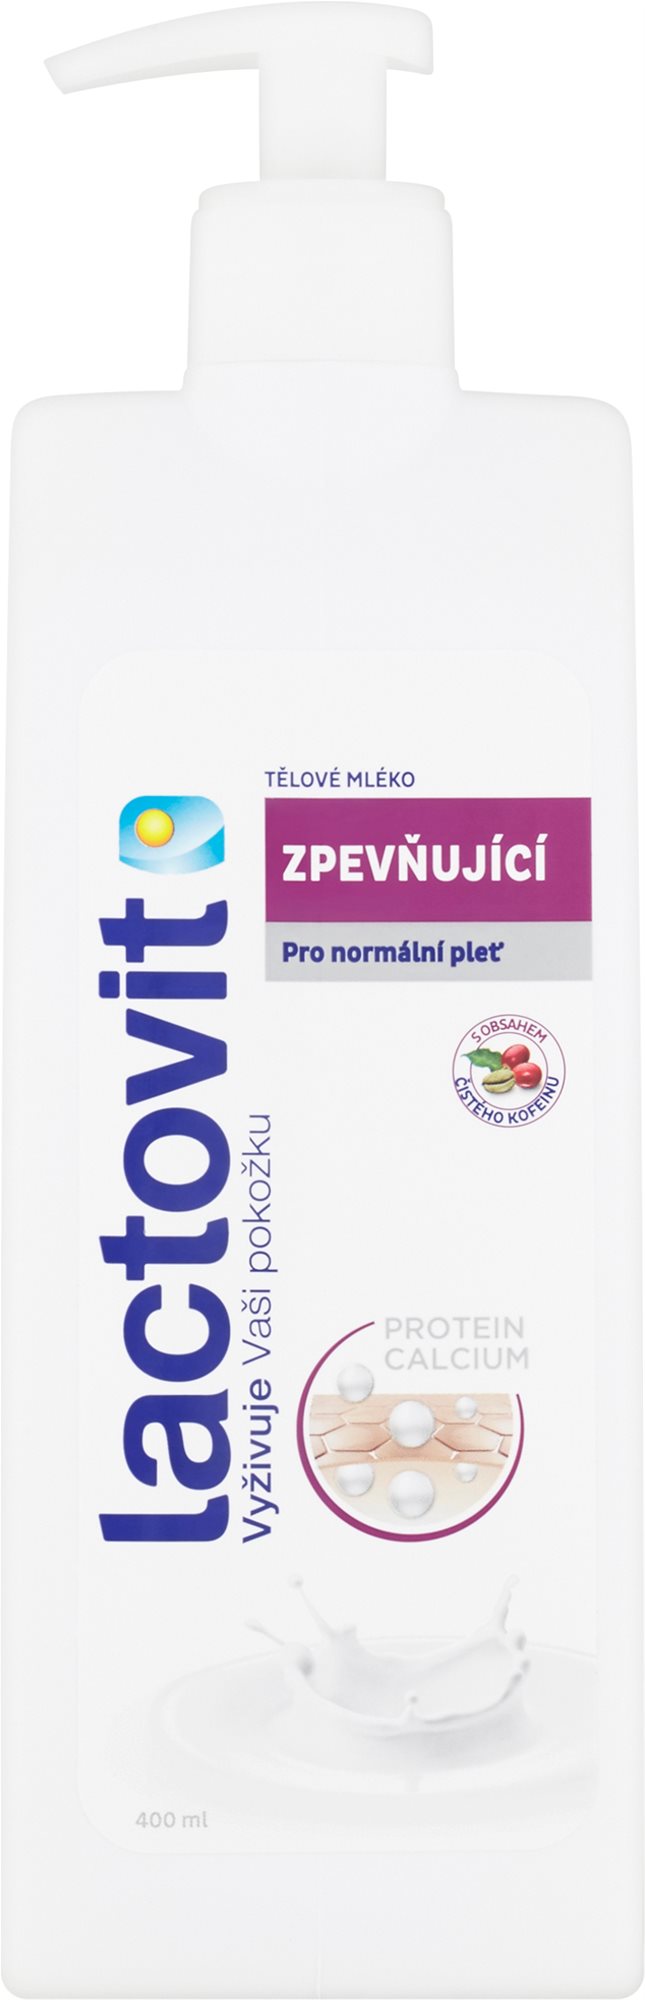 Testápoló tej LACTOVIT bőrfeszesítő testápoló tej 400 ml